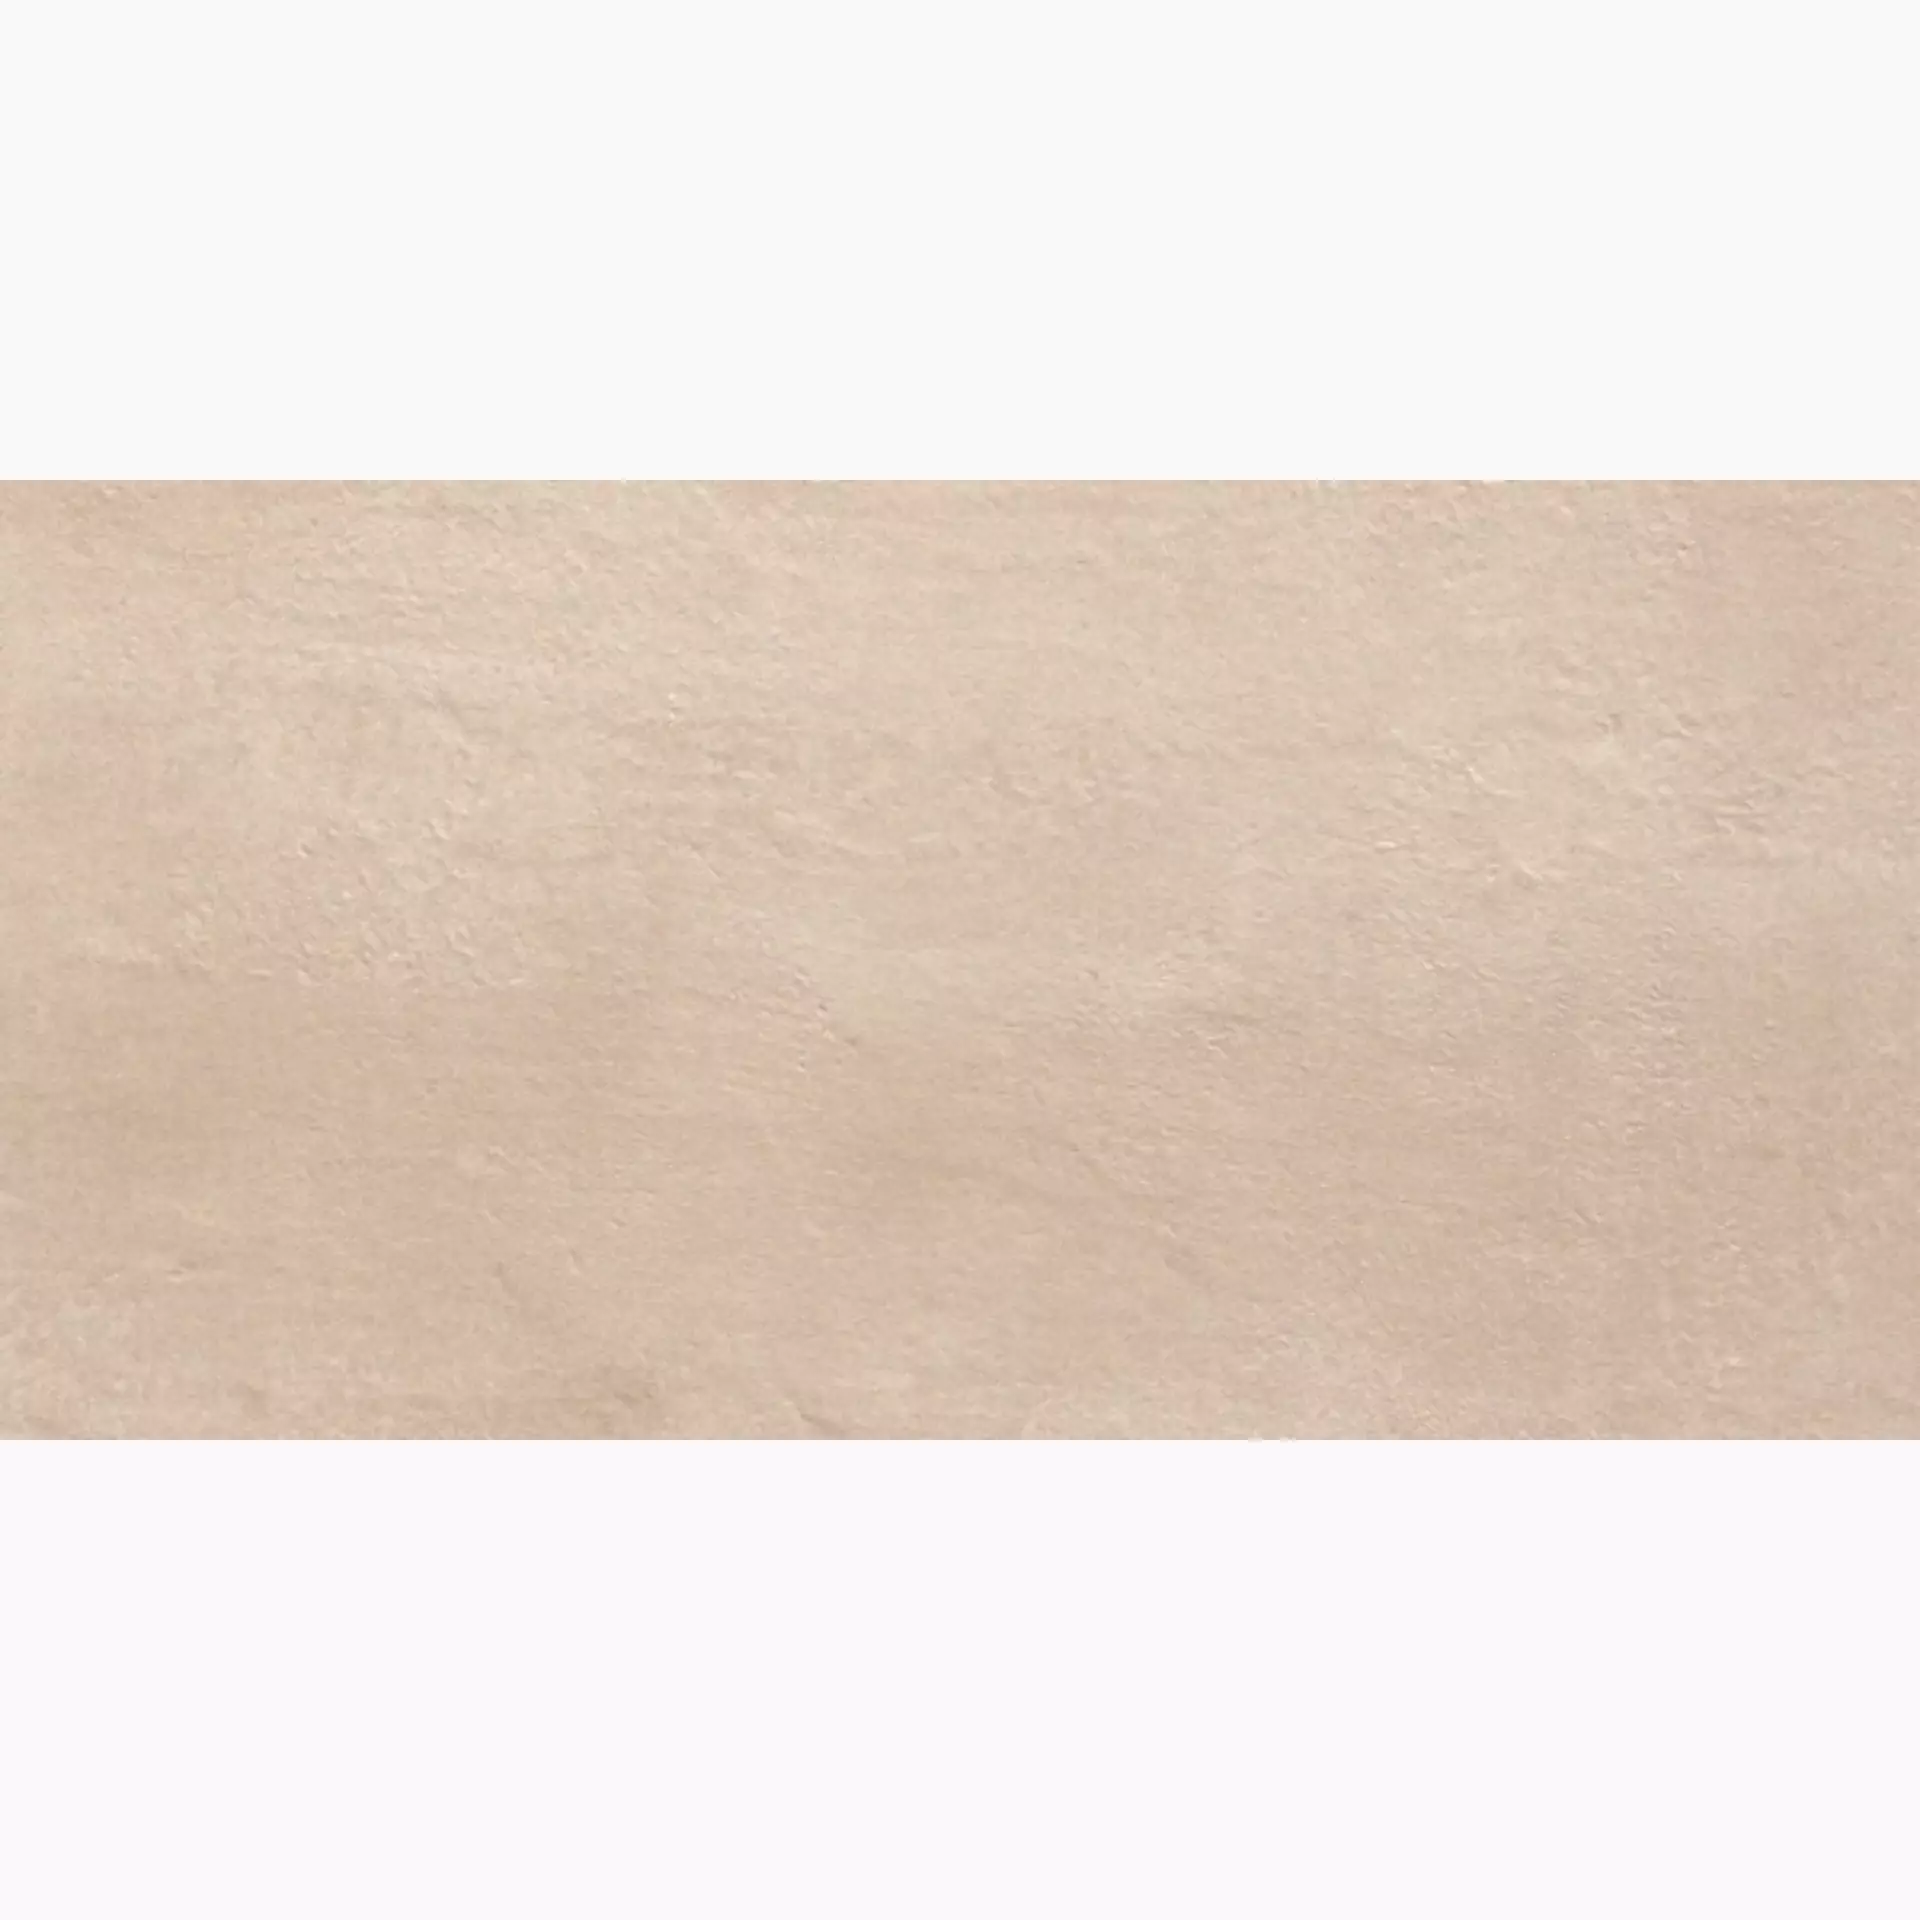 Casalgrande Beton Sand Naturale – Matt Sand 1300013 natur matt 37,5x75,5cm rektifiziert 10mm